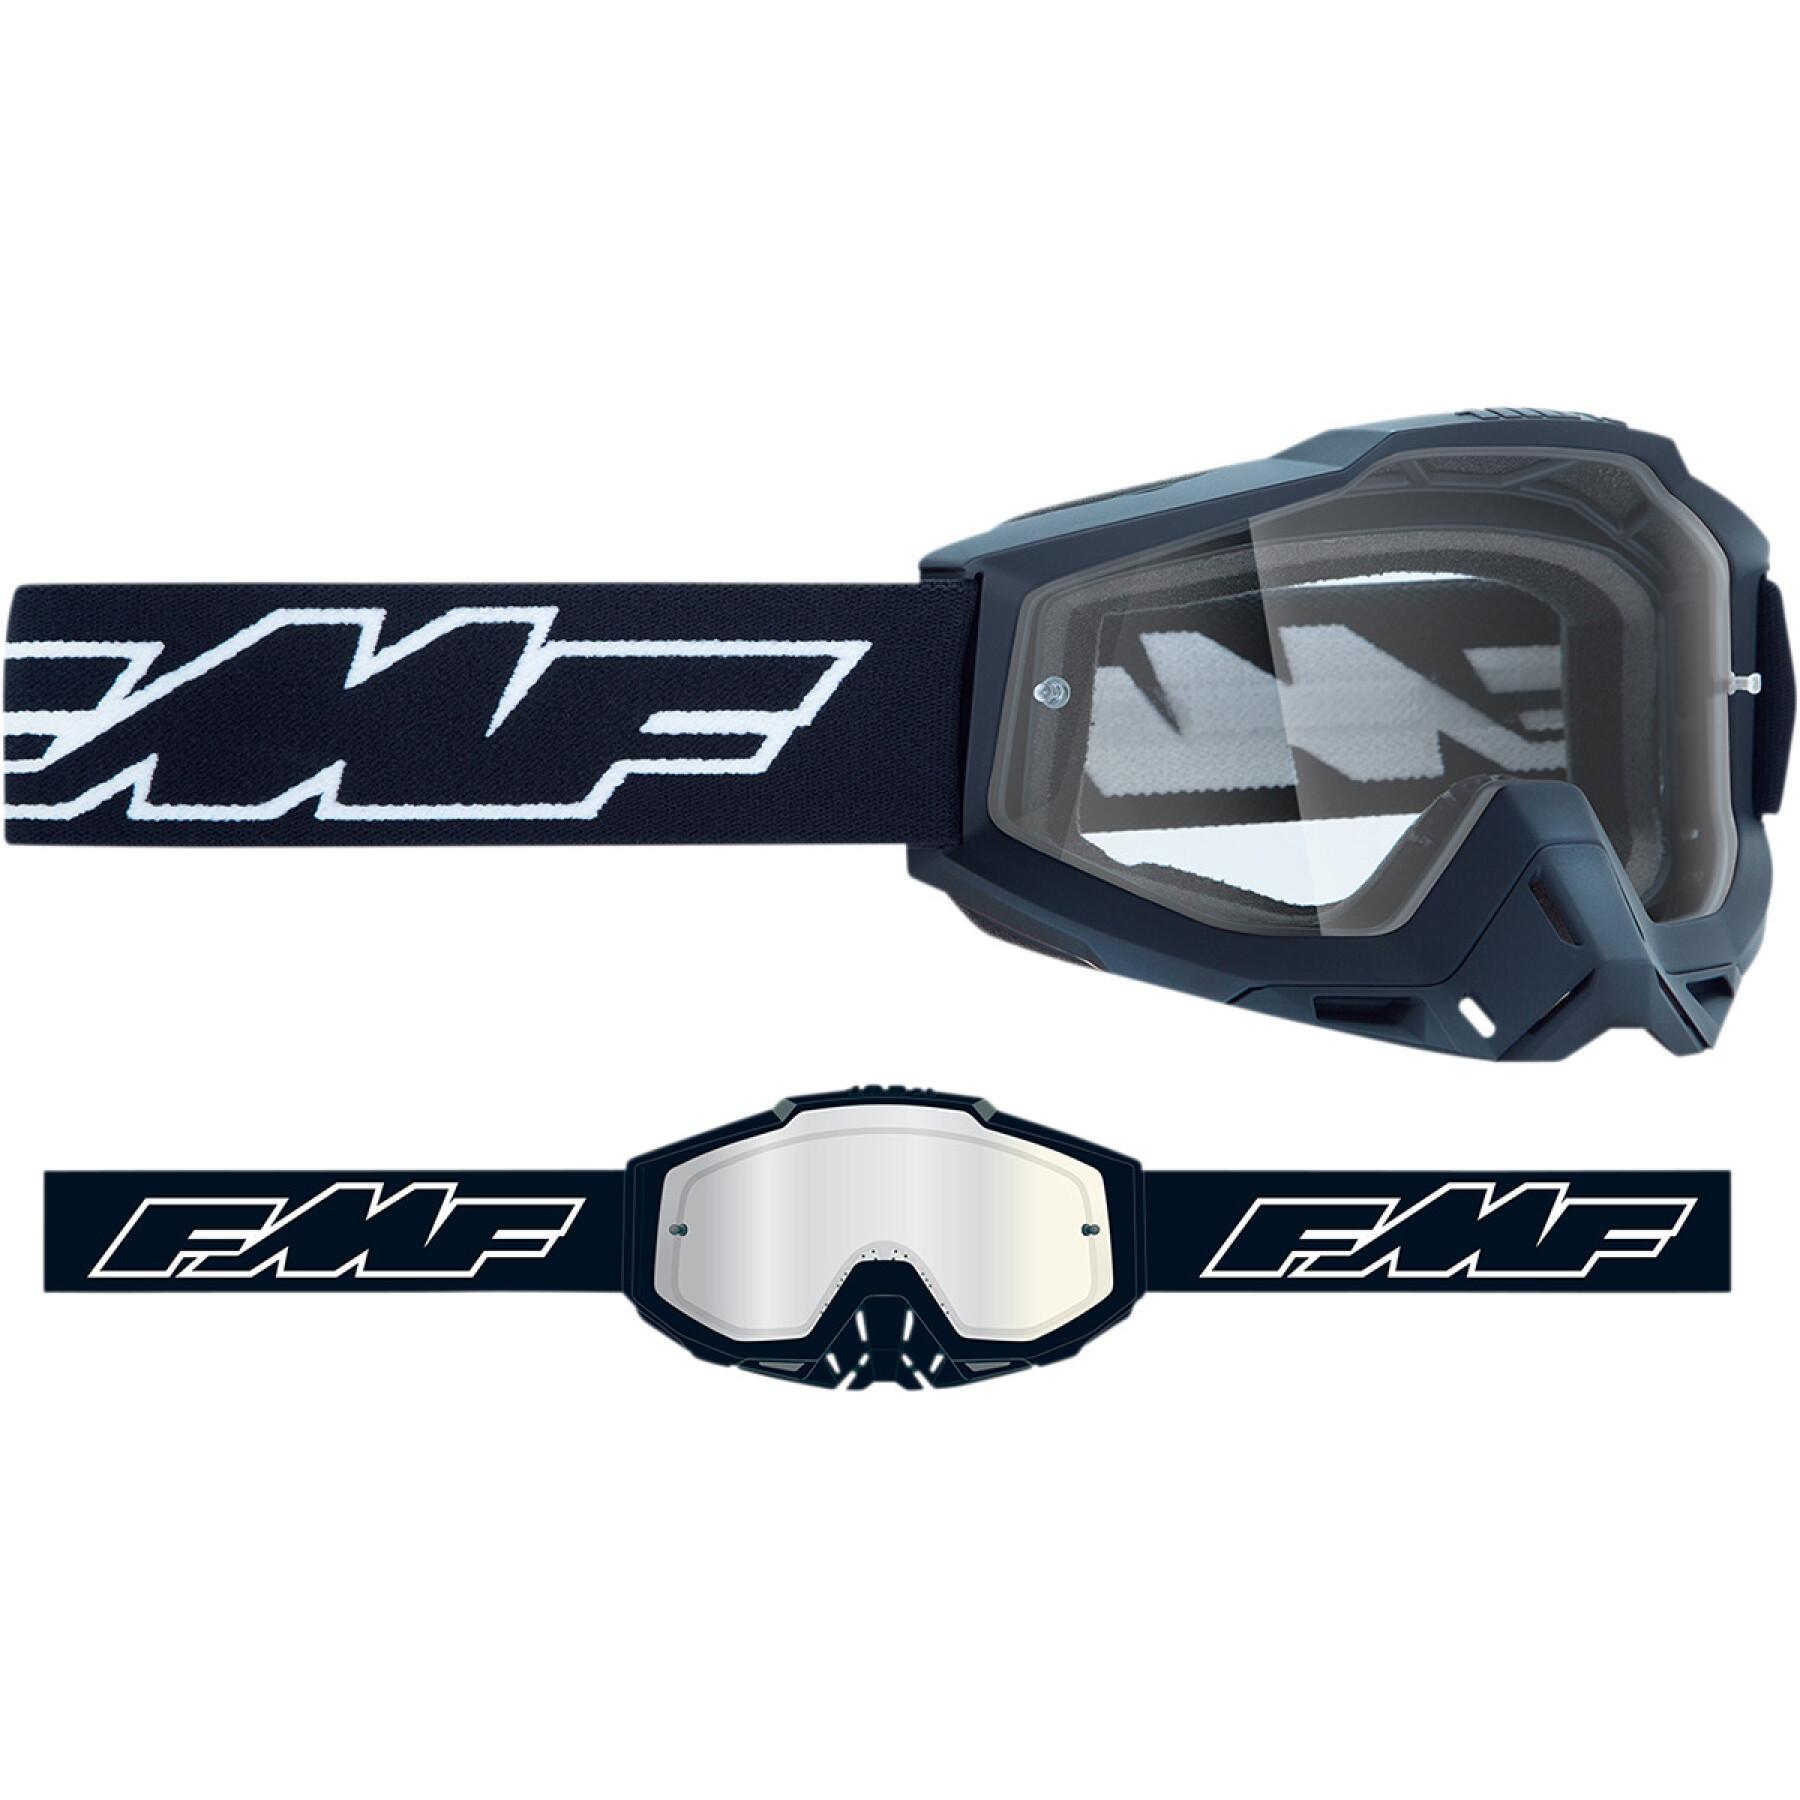 Kinder-Motorrad-Cross-Maske FMF Vision Rocket